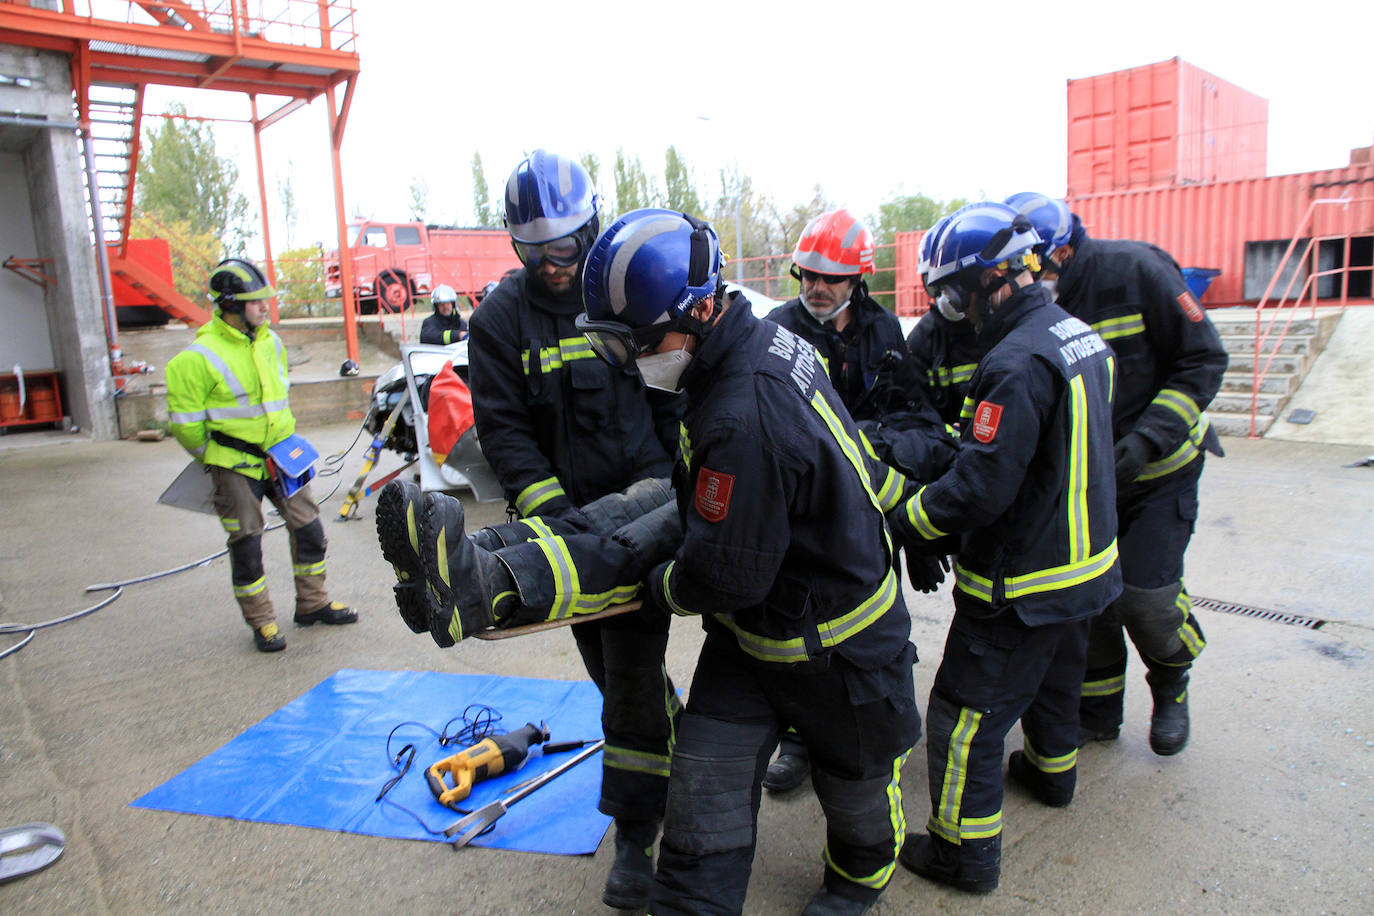 Rescate de los bomberos de Segovia en uno de los ejercicios ensayados en el parque de la capital.